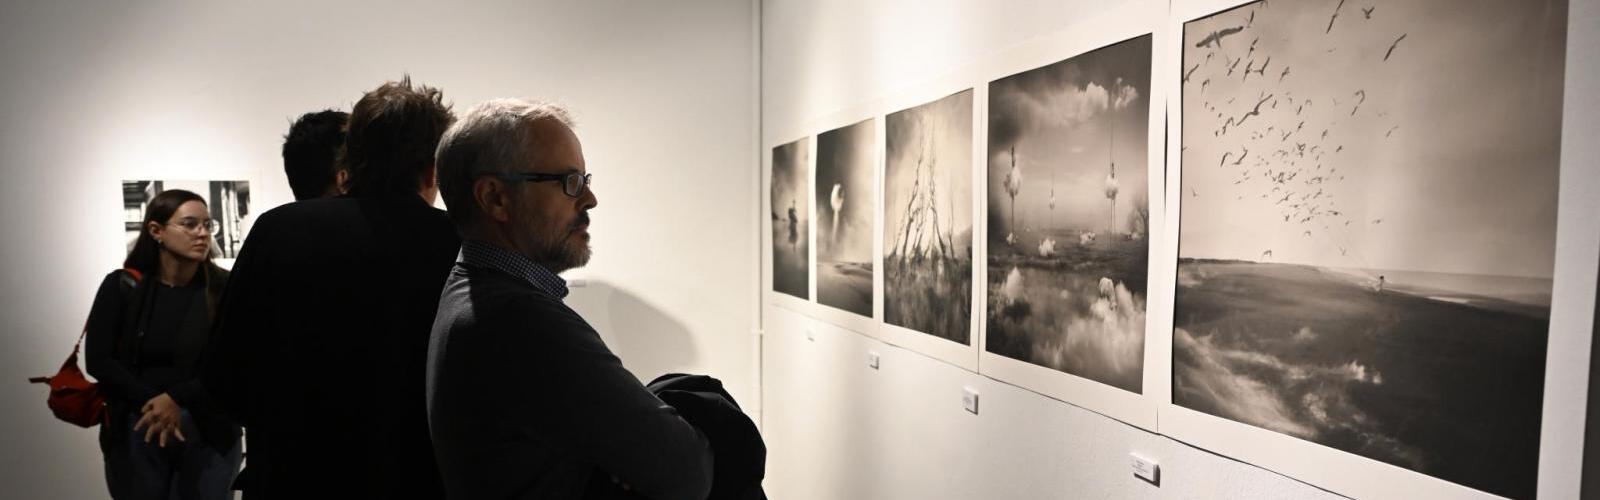 El Premio de Fotografía de la UMU va a parar a la obra 'El jardín de las jirafas' de Oriol Jolonch